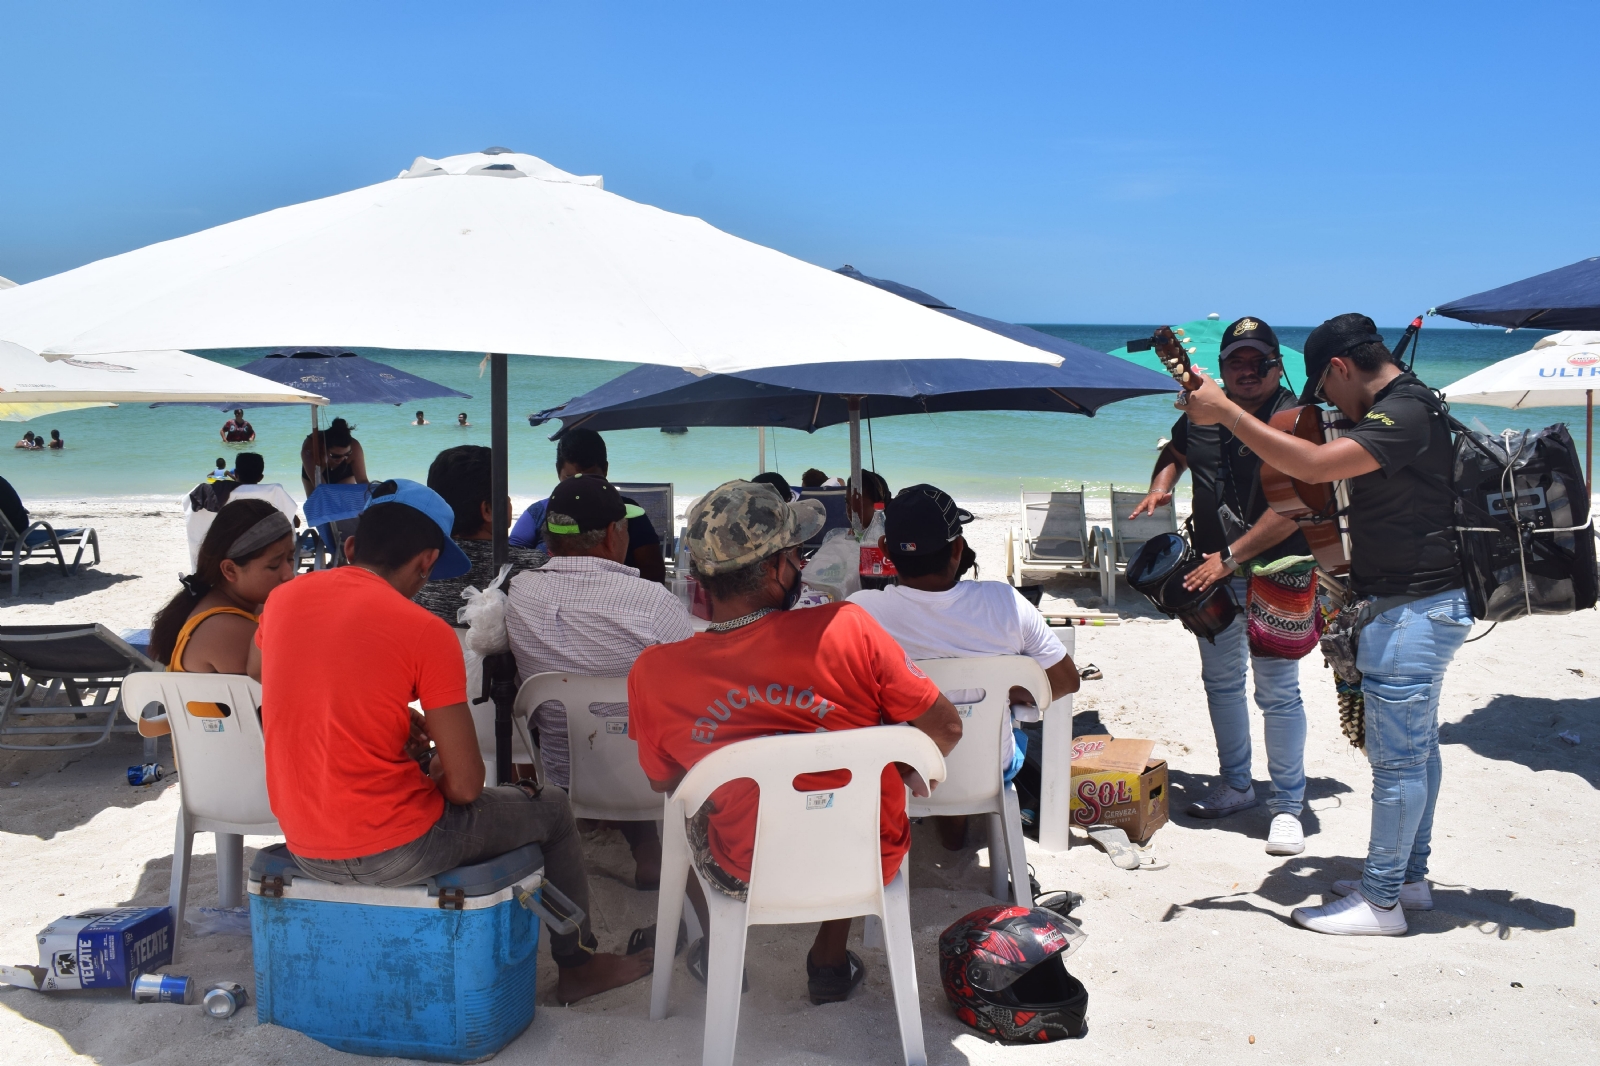 En Yucatán, una persona dedicada al turismo gana entre 70 mil a 79 mil pesos al año: INEGI